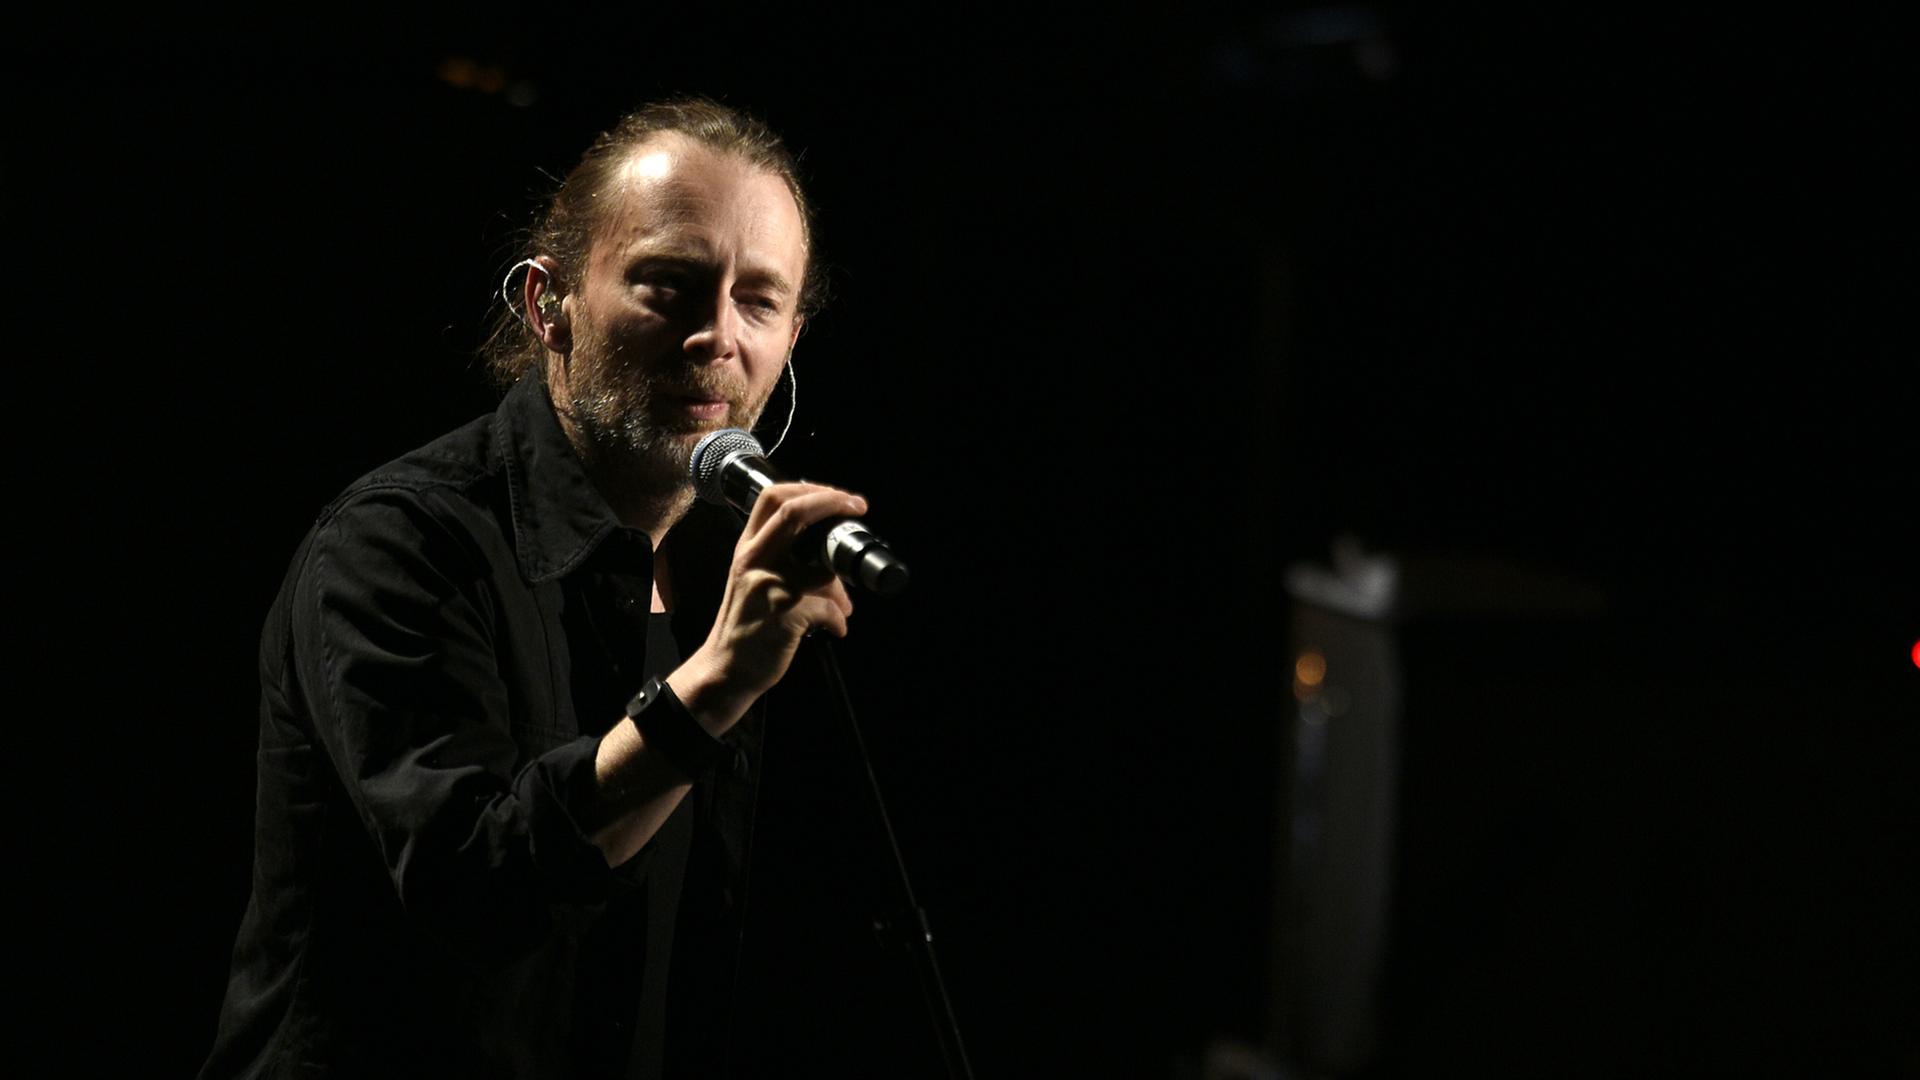 Der britische Sänger und Bandleader von Radiohead, Thom Yorke, bei einem "Pathway to Paris"-Konzert in Paris im Dezember 2015 im Rahmen der Pariser Klimakonferenz COP 21